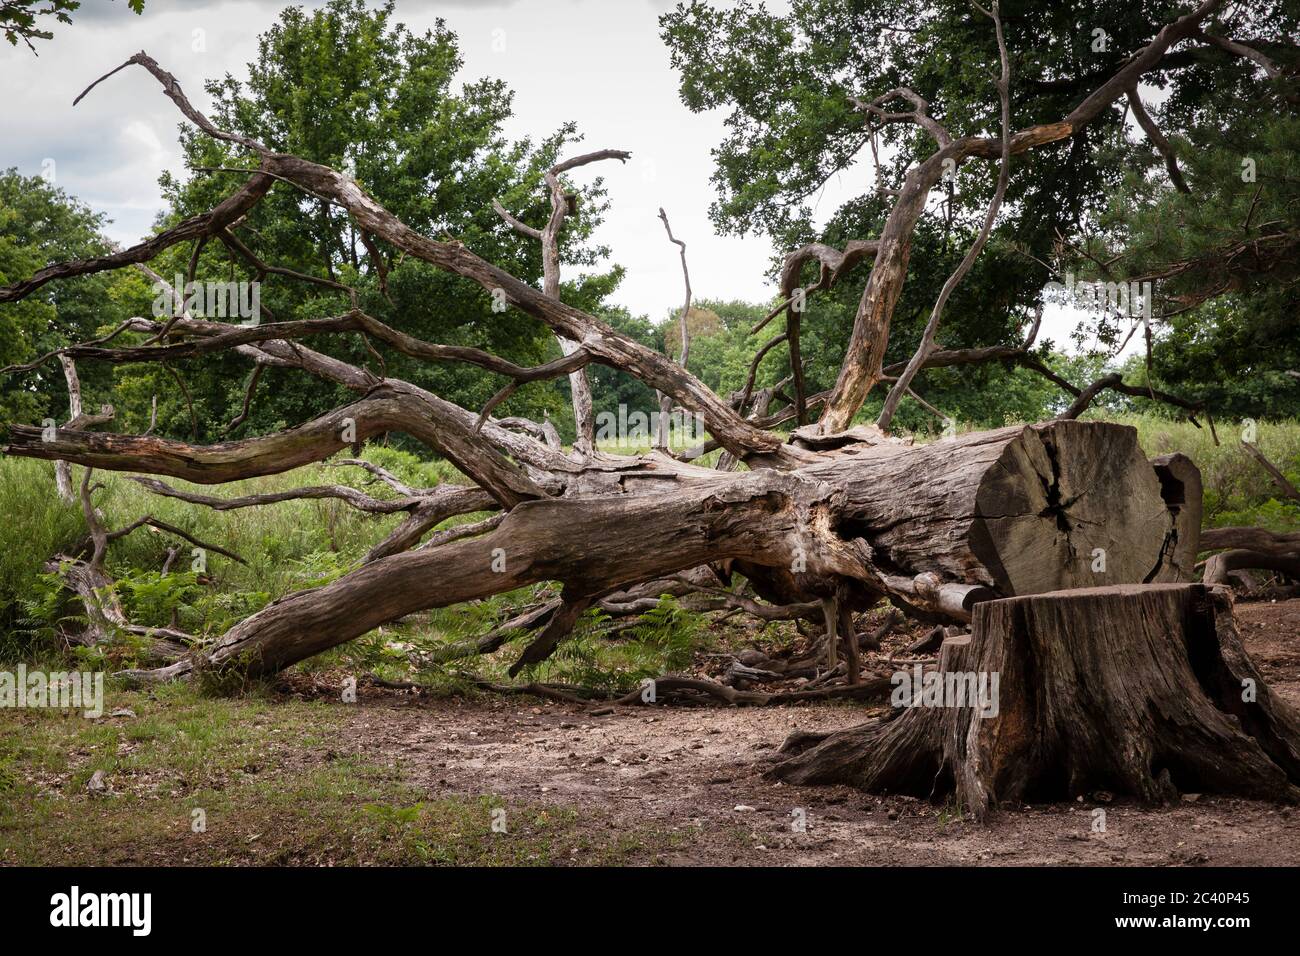 Albero abbattuto nella brughiera di Wahner, Colonia, Germania. Gefaellter Baum in der Wahner Heide, Koeln, Deutschland. Foto Stock